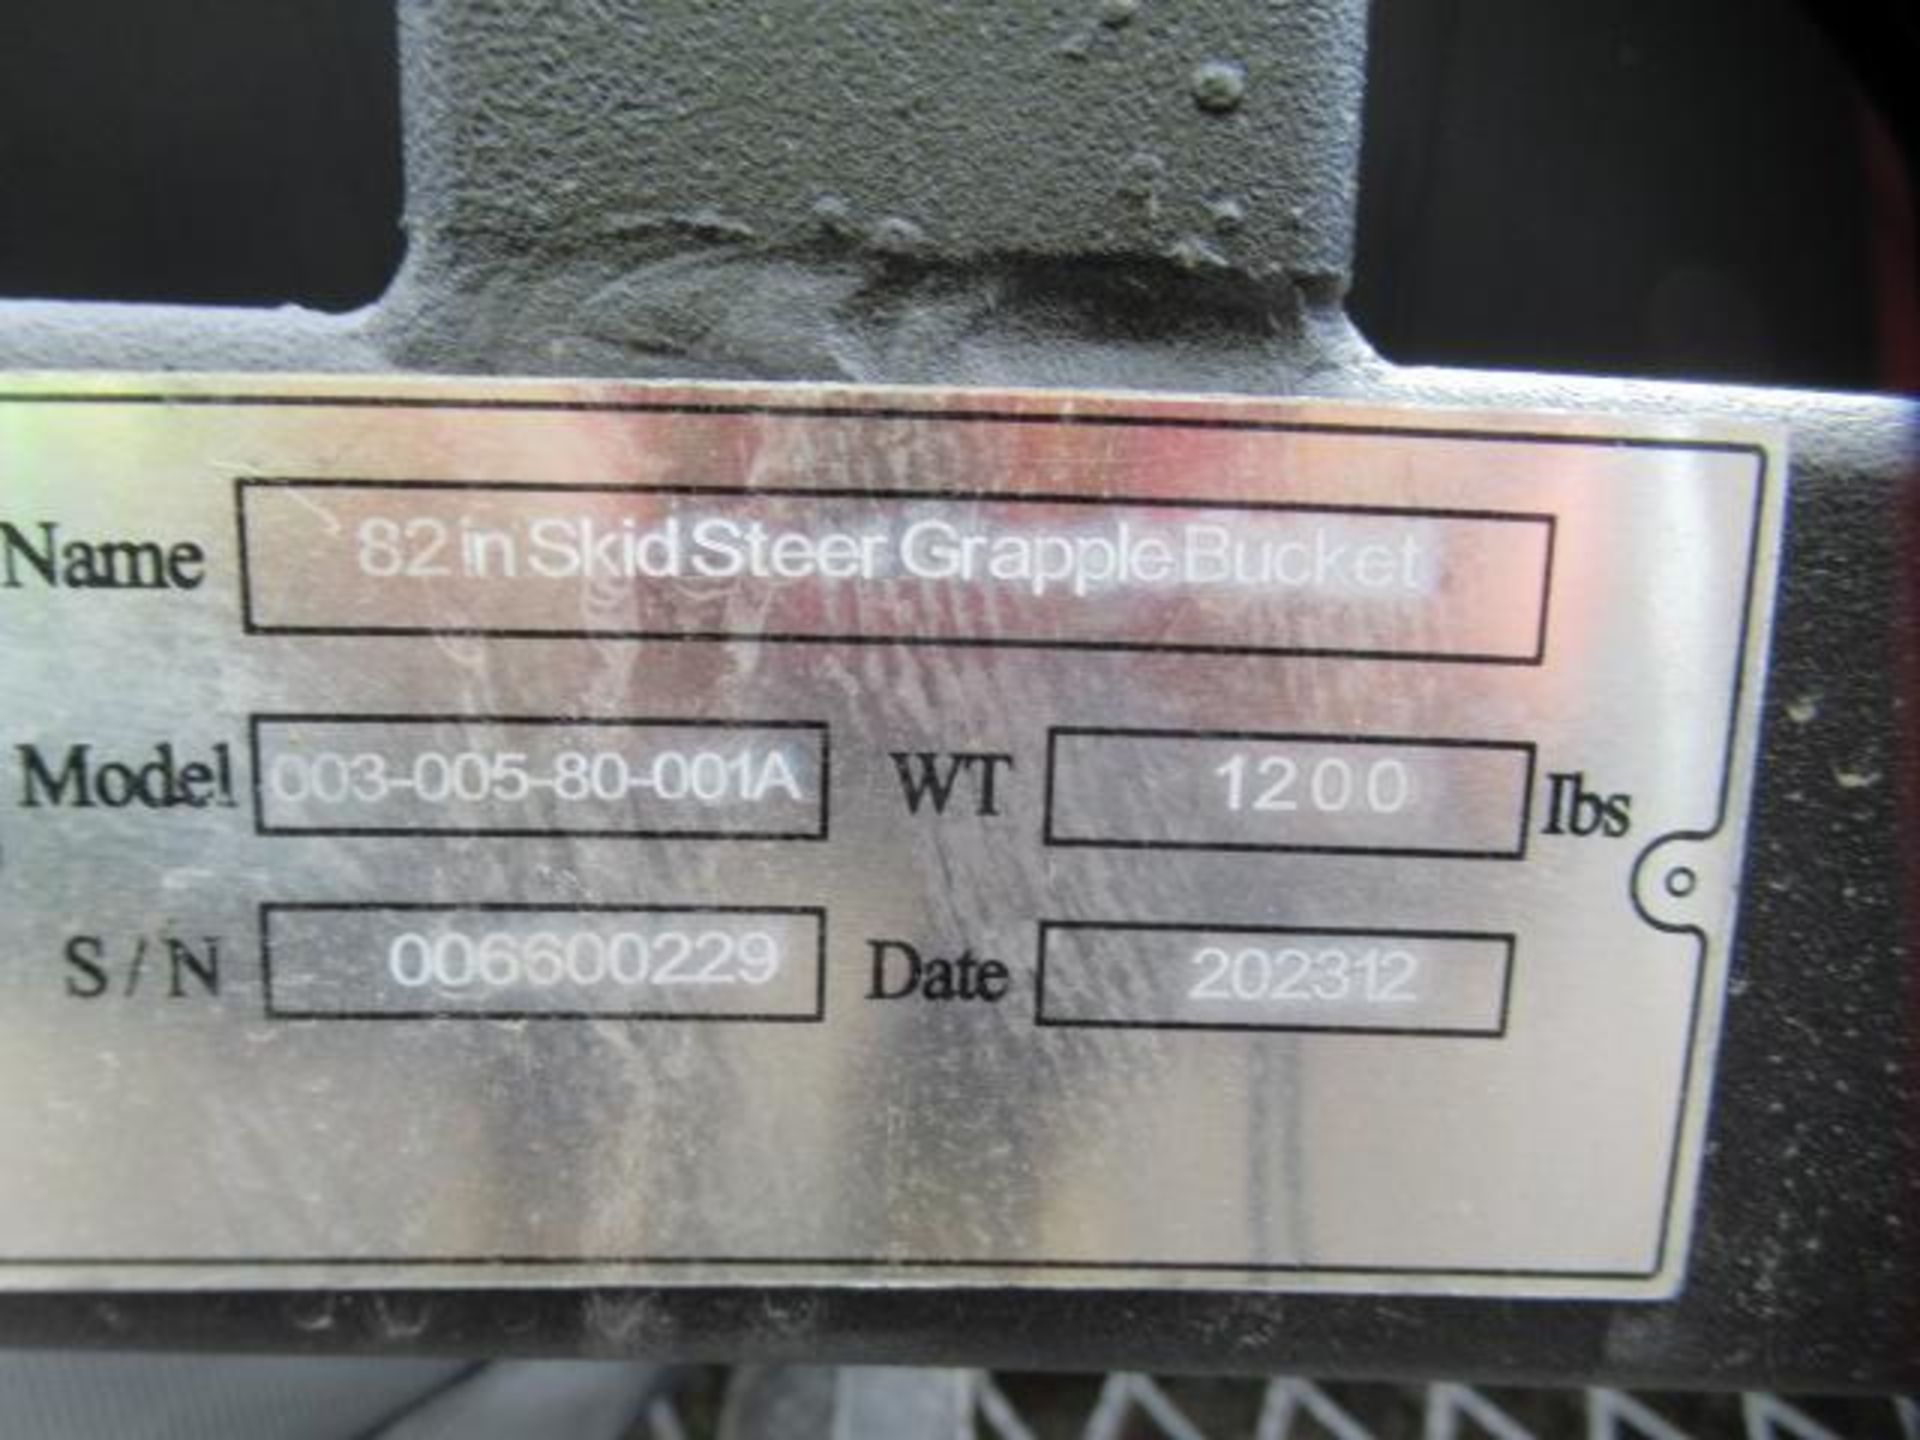 GREATBEAR 003-005-80-001A 82'' SKID STEER GRAPPLE BUCKET (UNUSED) - Image 5 of 5